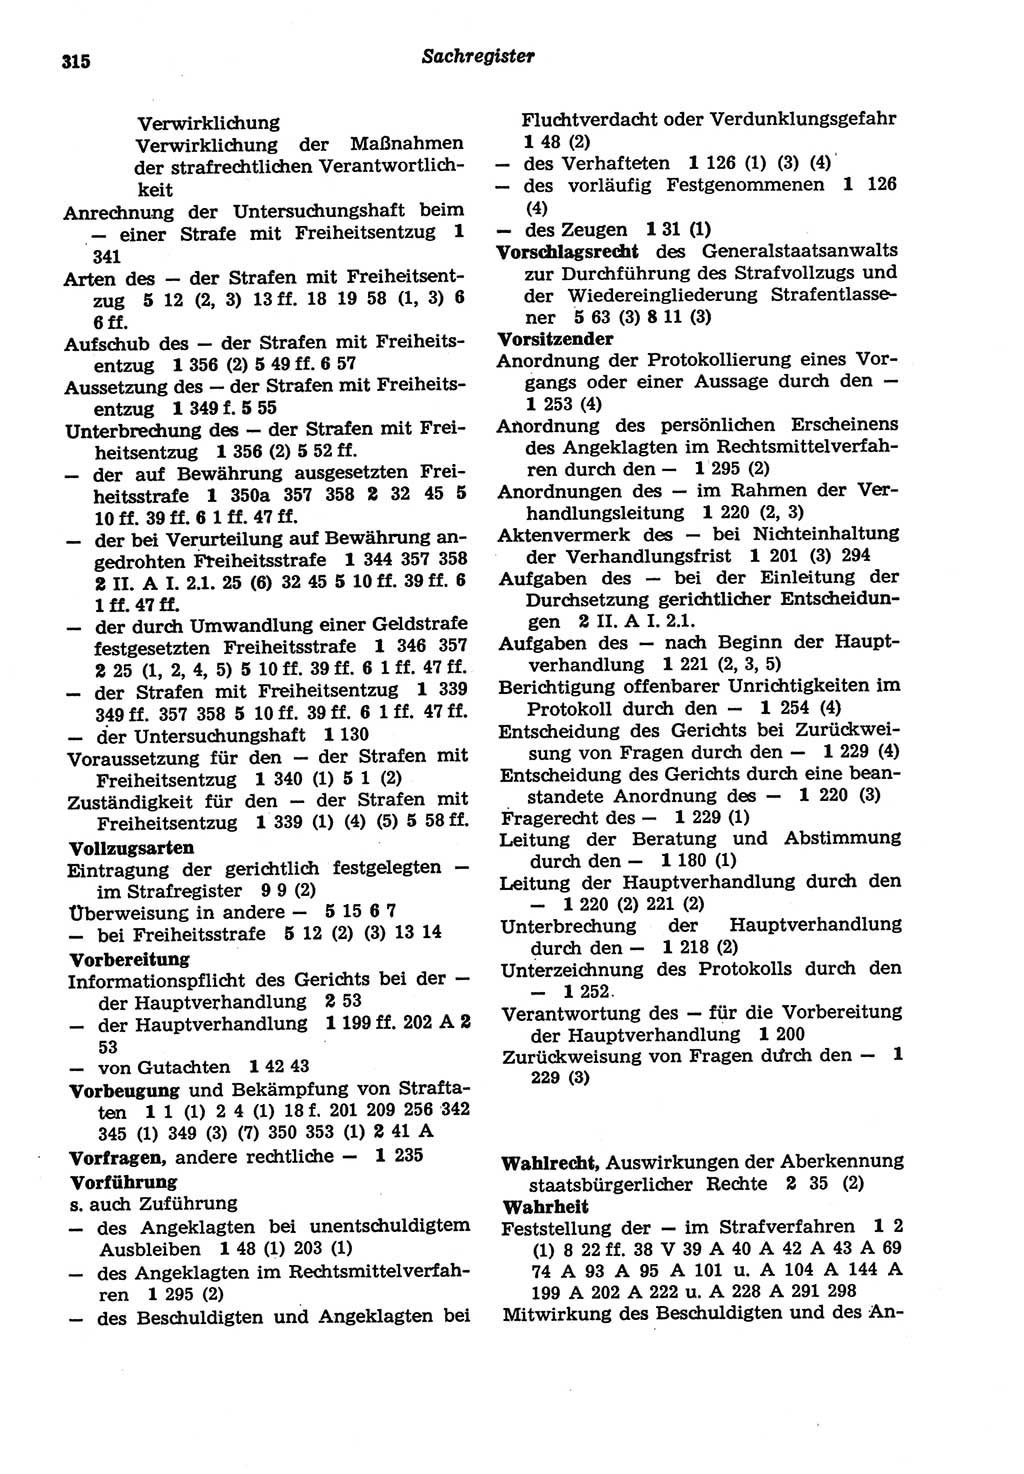 Strafprozeßordnung (StPO) der Deutschen Demokratischen Republik (DDR) sowie angrenzende Gesetze und Bestimmungen 1977, Seite 315 (StPO DDR Ges. Best. 1977, S. 315)